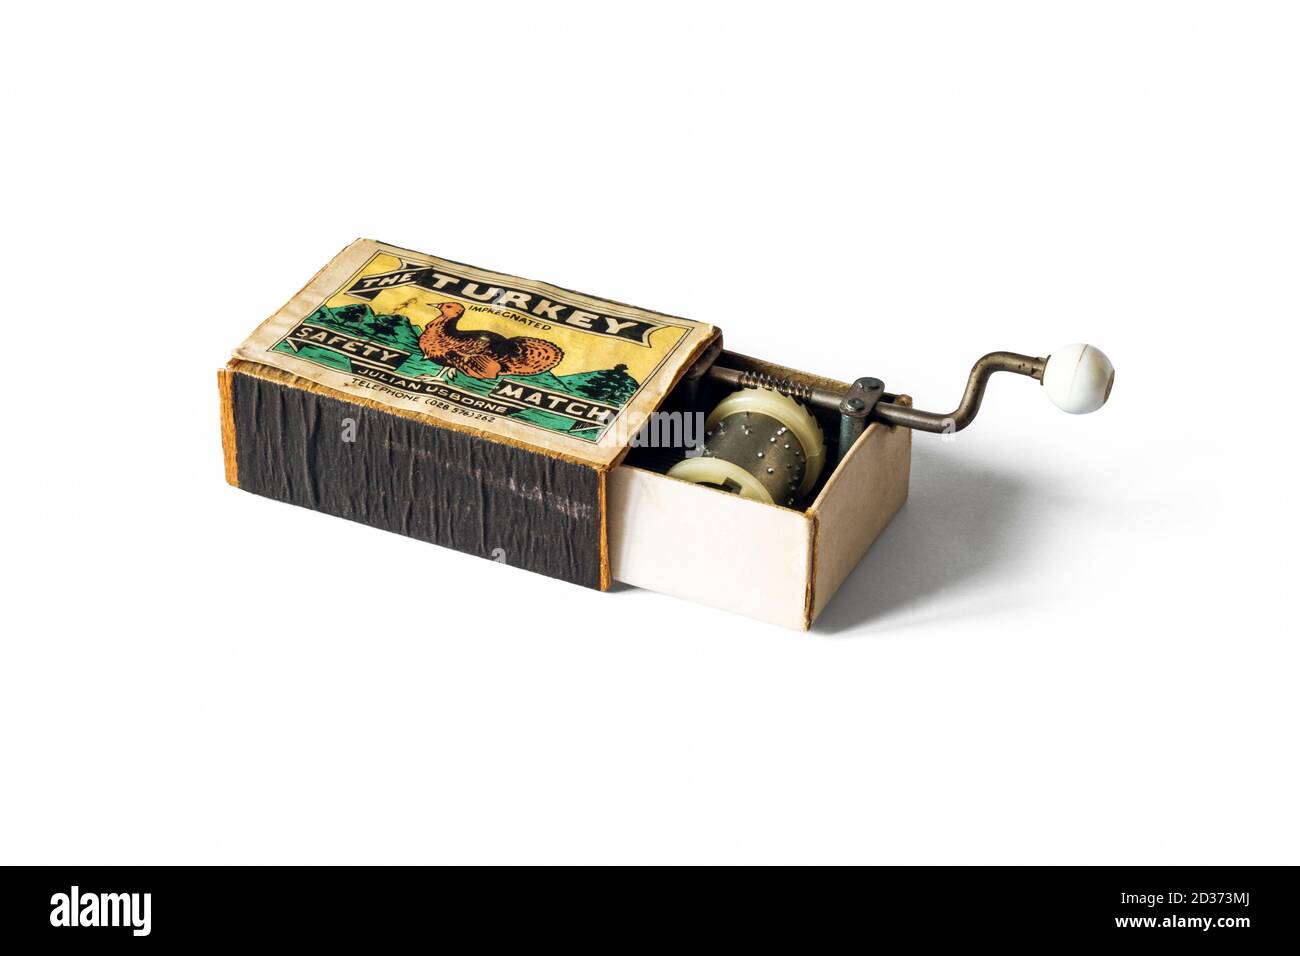 Una caja de cerillas de 'Turquía' de Julian Usborne que contiene un mecanismo de caja musical mecánica, actuando como un tablero de sonido Foto de stock